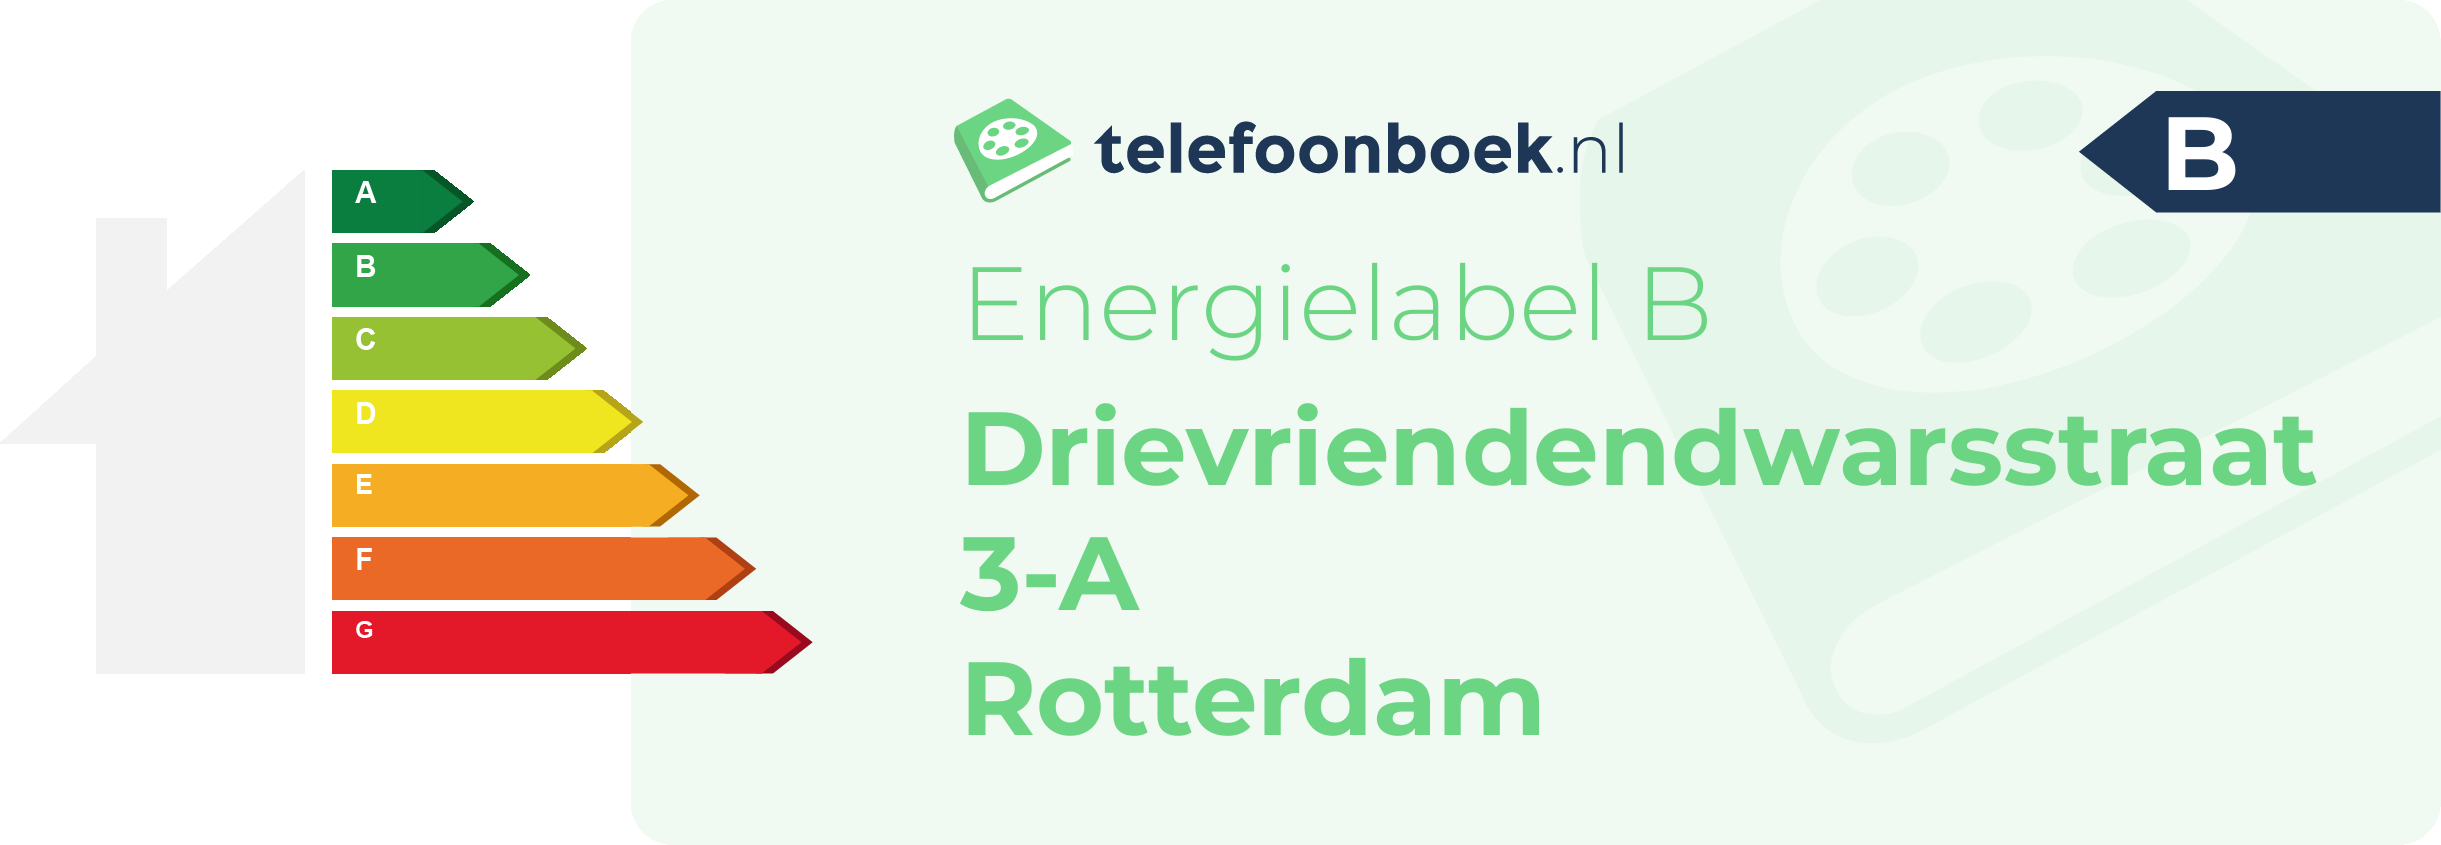 Energielabel Drievriendendwarsstraat 3-A Rotterdam